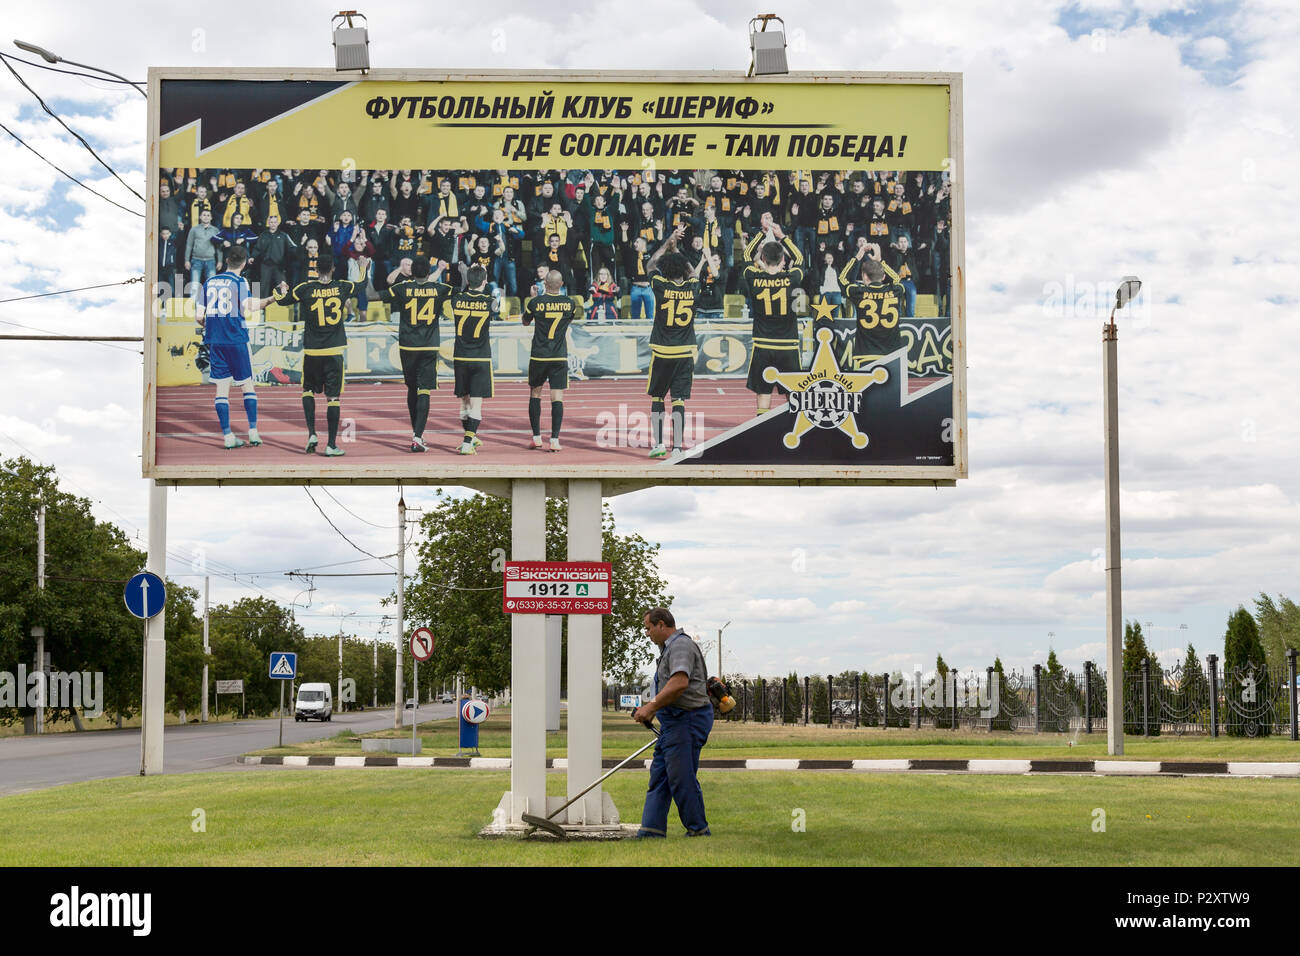 25.08.2016, Tiraspol, Transnistria Moldova - Poster accanto alla Sheriff complesso sportivo con tra gli altri. Due stadi di calcio sono la promozione del footb Foto Stock